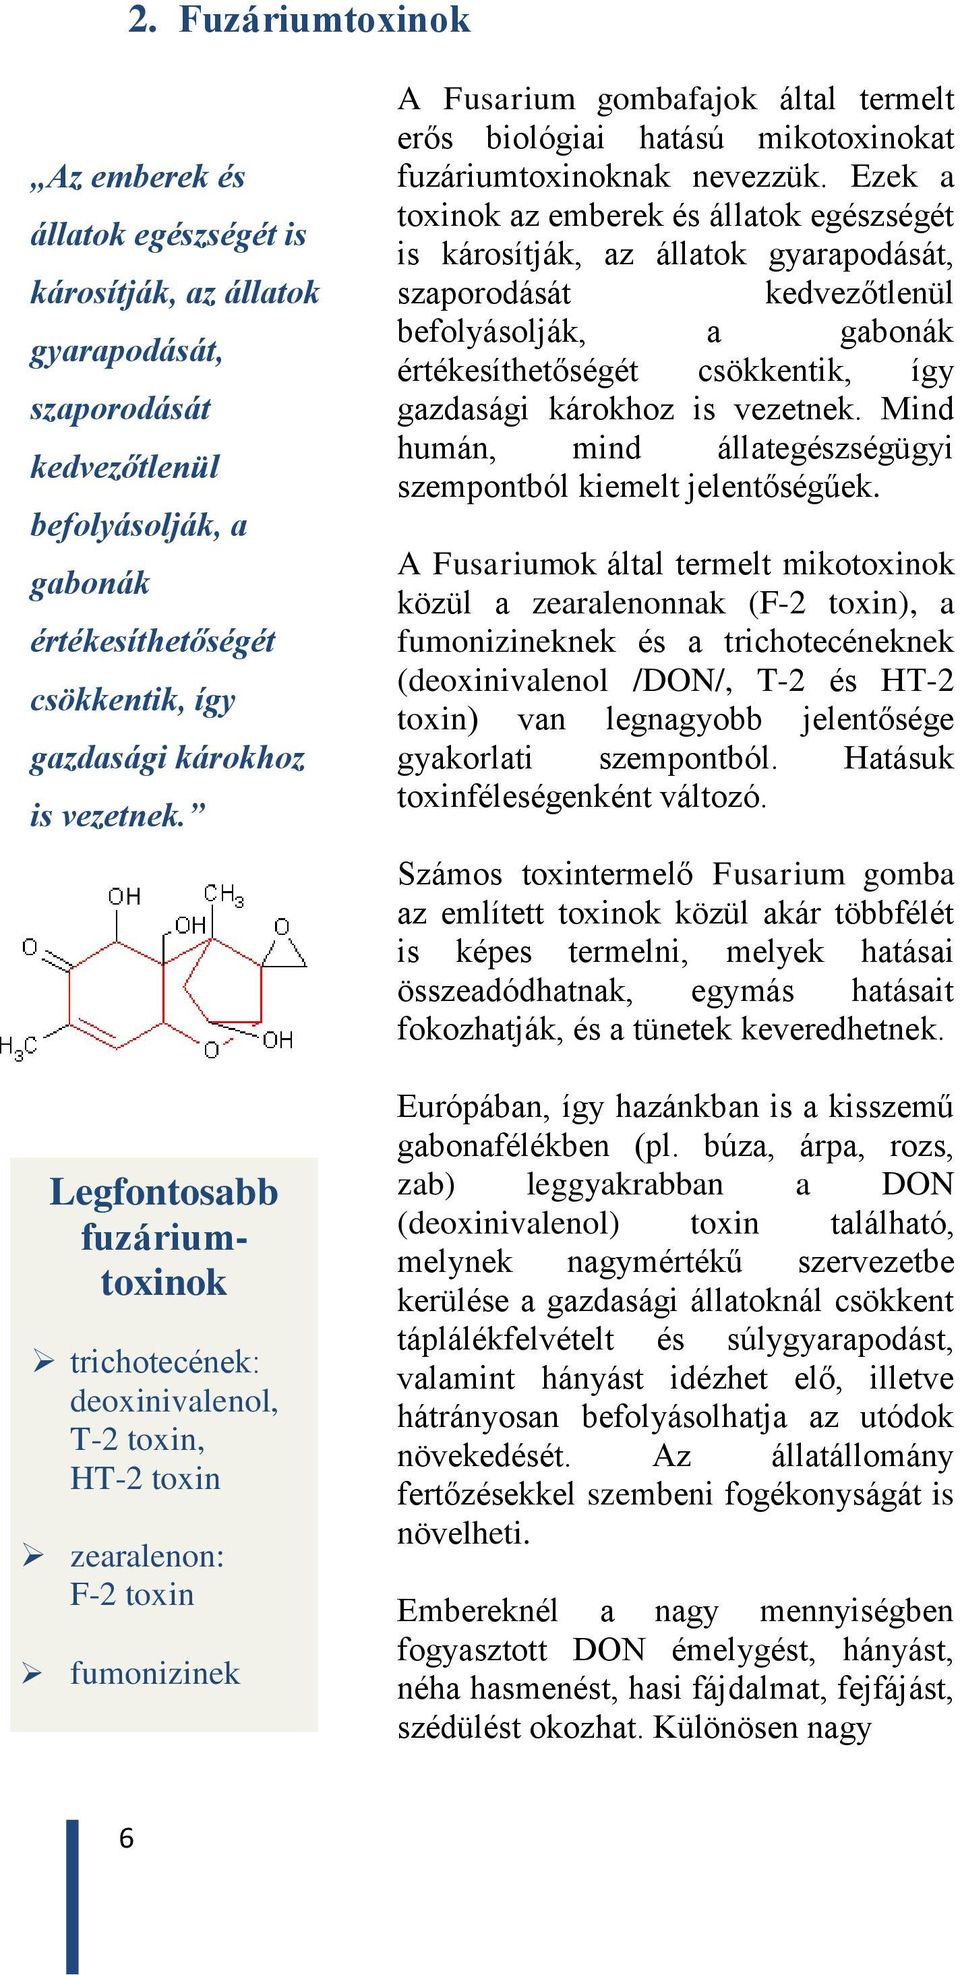 Legfontosabb fuzáriumtoxinok trichotecének: deoxinivalenol, T-2 toxin, HT-2 toxin zearalenon: F-2 toxin fumonizinek A Fusarium gombafajok által termelt erős biológiai hatású mikotoxinokat